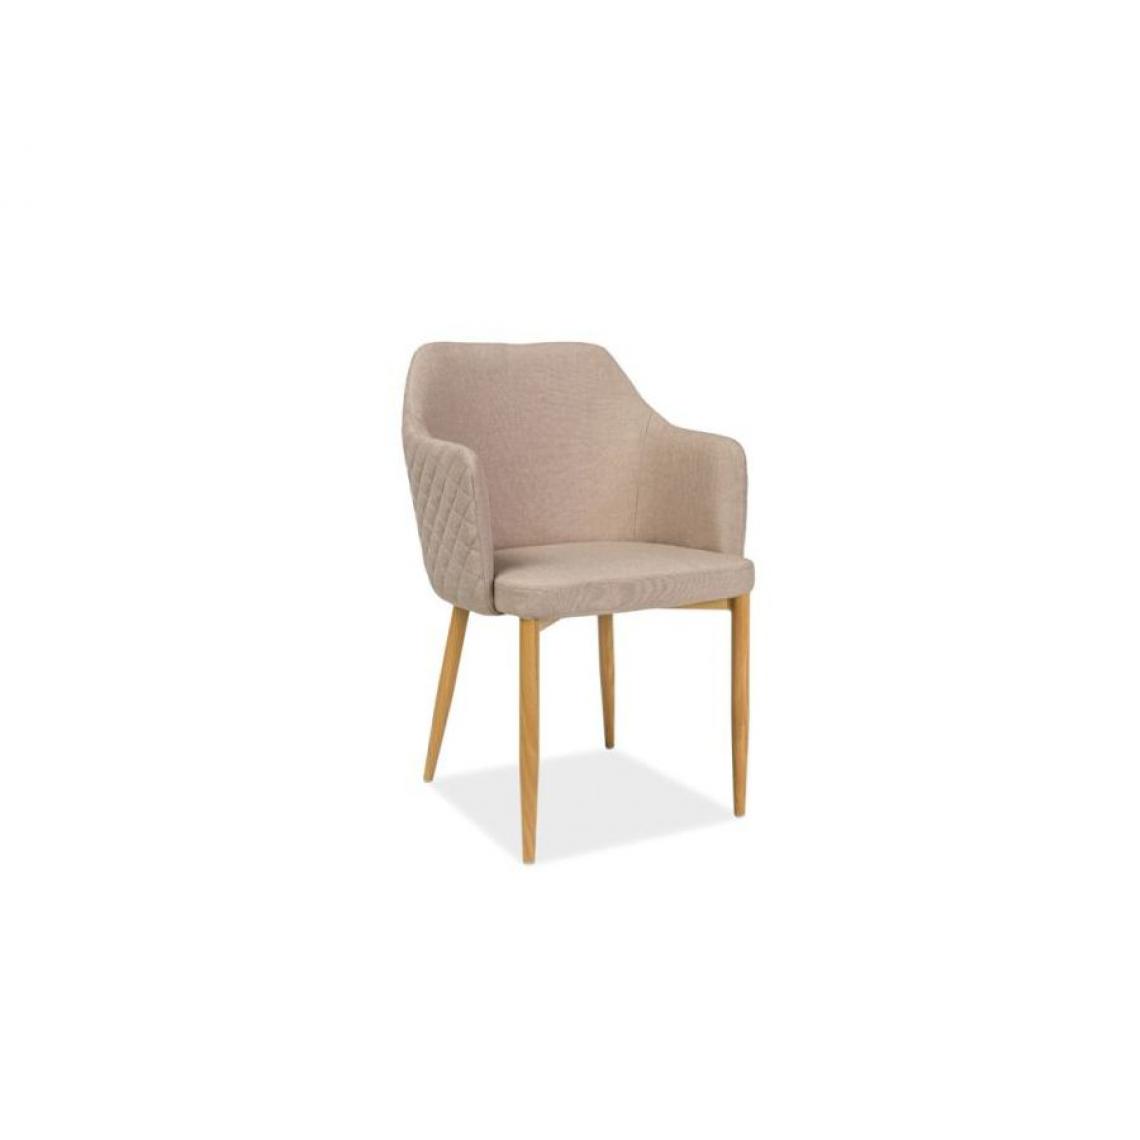 Hucoco - ASTOP | Chaise style scandinave bureau salle à manger | Dimensions: 84x46x46 cm | Revêtement en tissu | Chaise élégante - Beige - Chaises